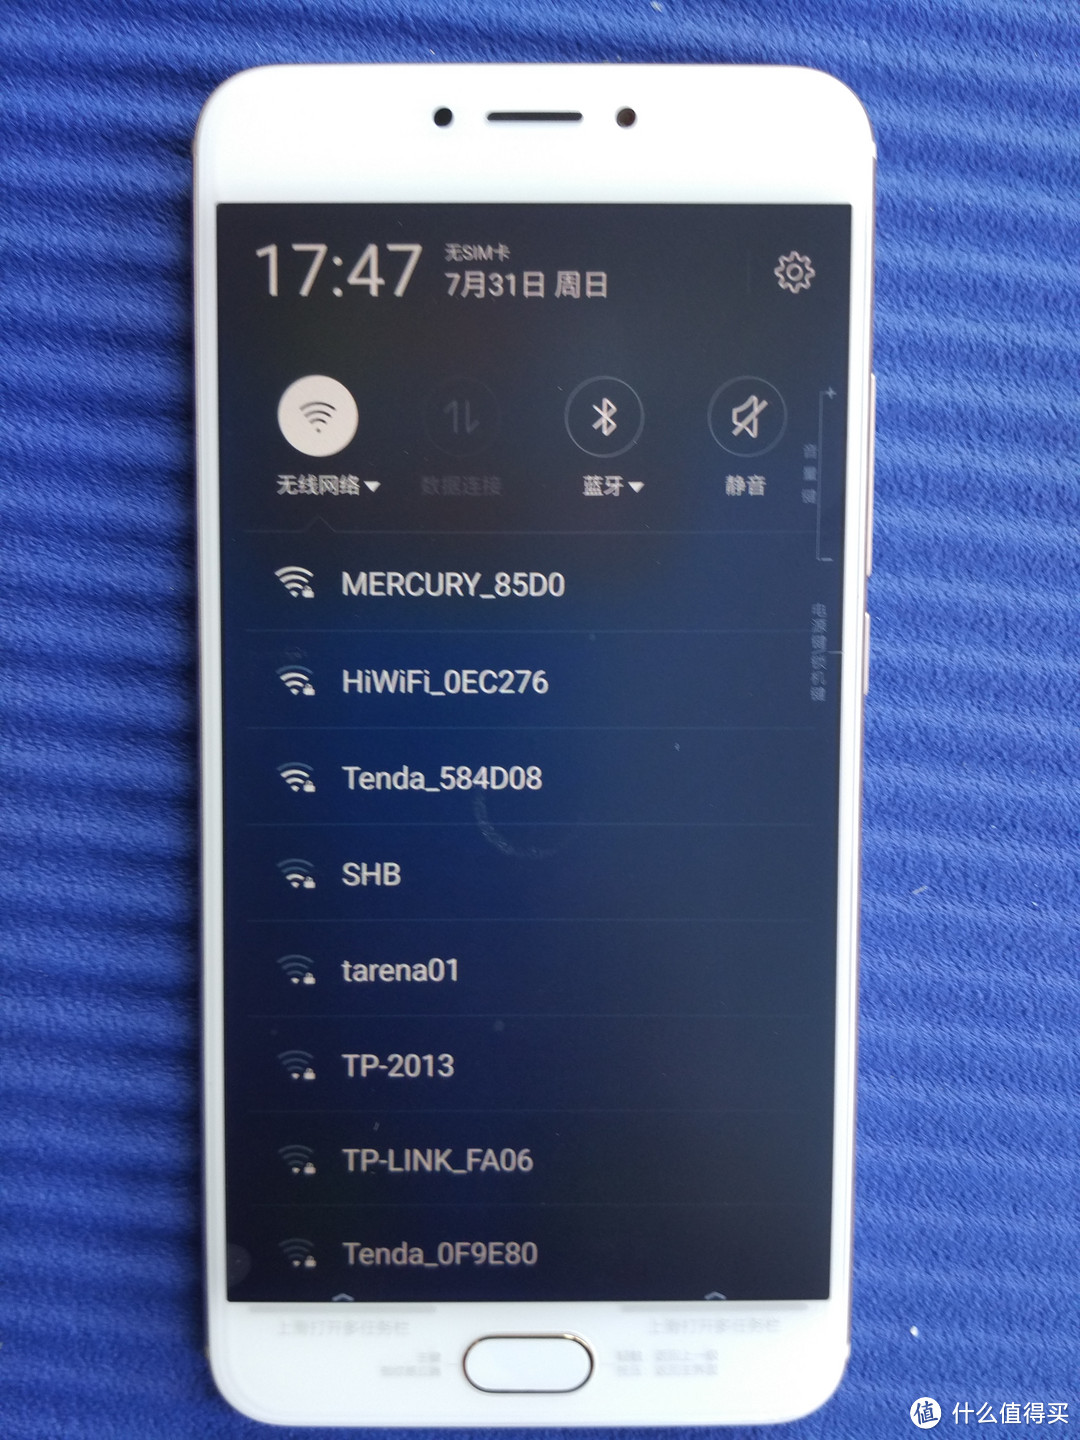 第一次用魅族—— MEIZU 魅族 MX6 智能手机 给我的好体验